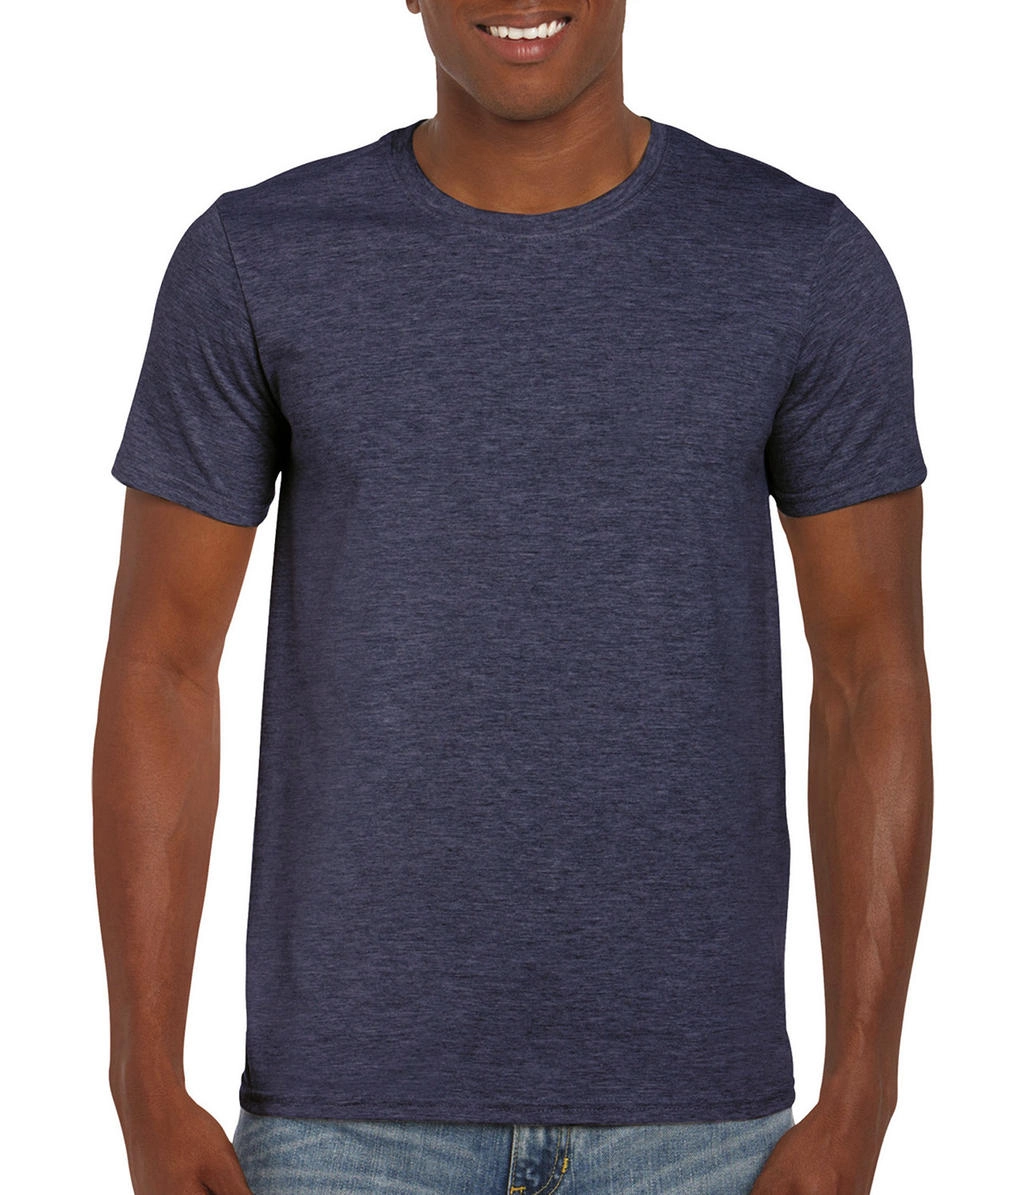 Softstyle® Ring Spun T-Shirt zum Besticken und Bedrucken in der Farbe Heather Navy mit Ihren Logo, Schriftzug oder Motiv.